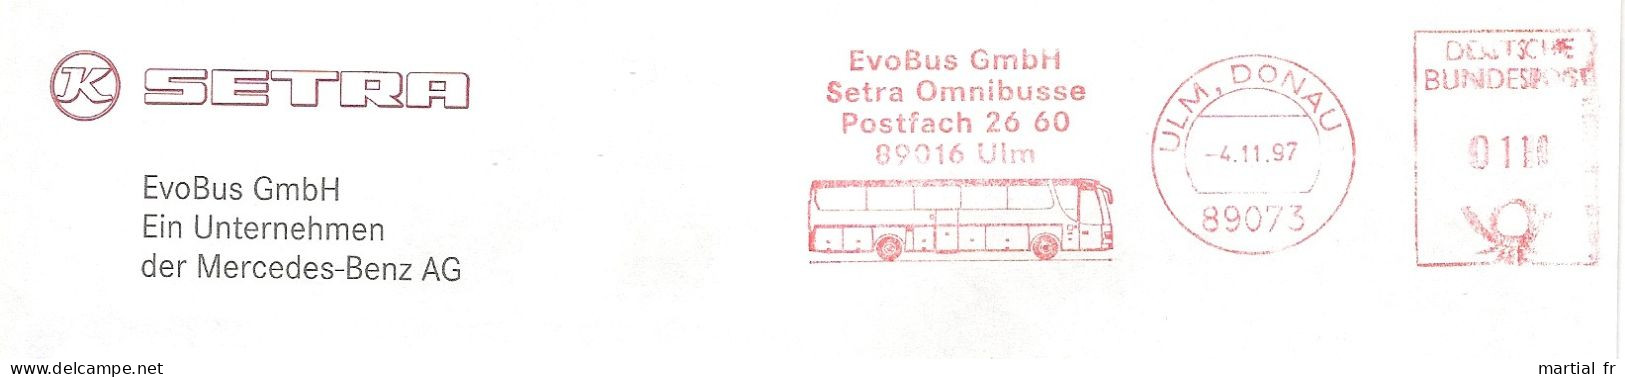 EMA RED METER STAMP FREISTEMPEL ALLEMAGNE BUS TRANSPORT AUTOBUS OMNIBUS EVOBUS ULM DAIMLER BENZ Donau 89073 - Bus